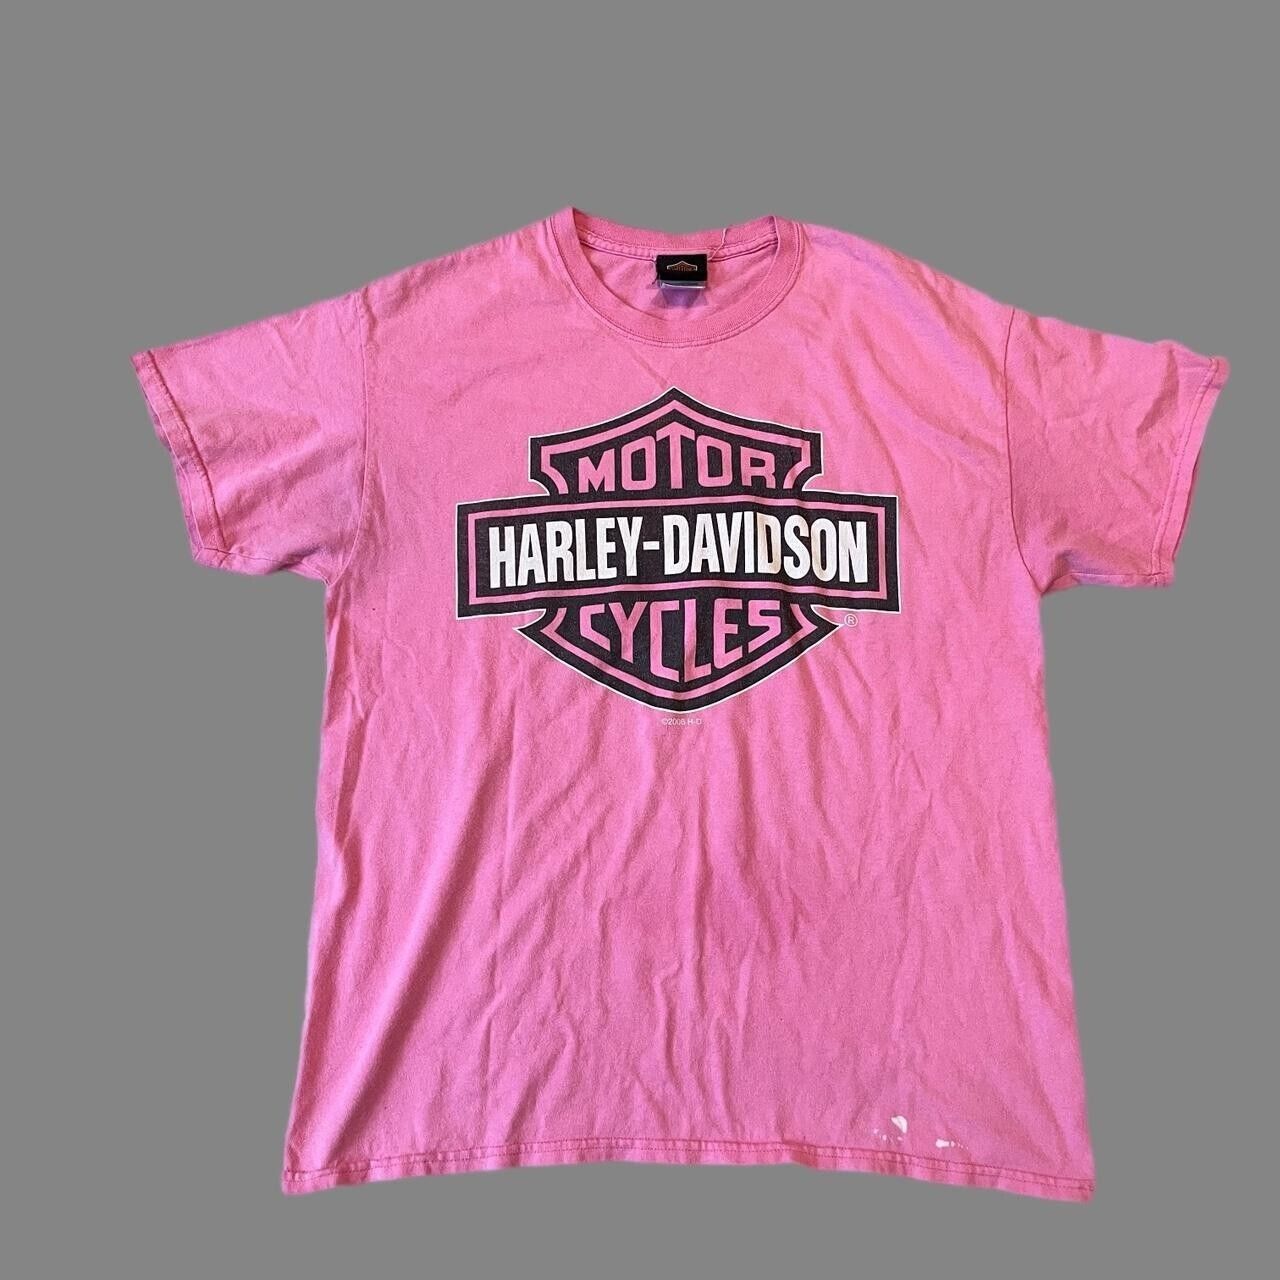 2000s Harley Davidson pink logo graphic tshirt Size: large men’s